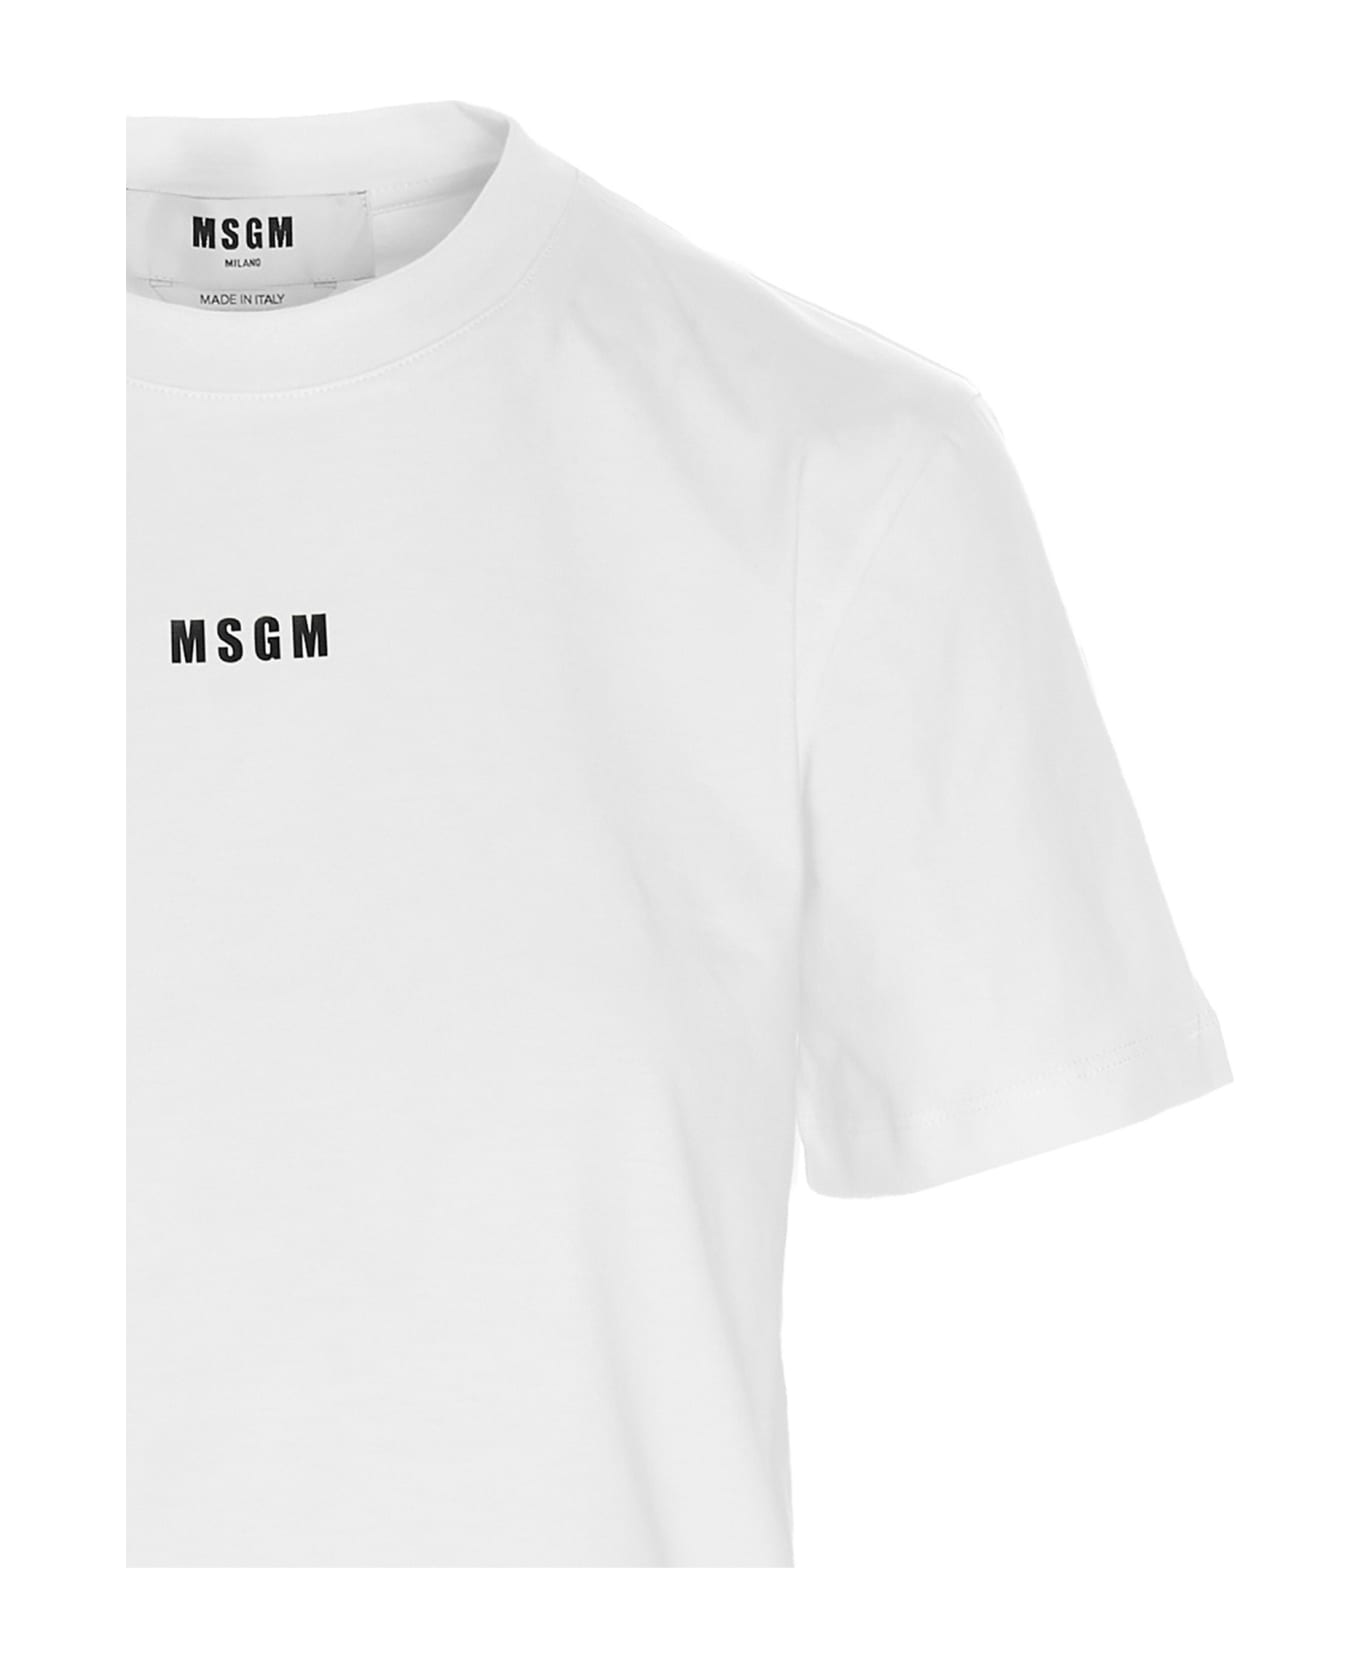 MSGM Logo T-shirt - White Tシャツ